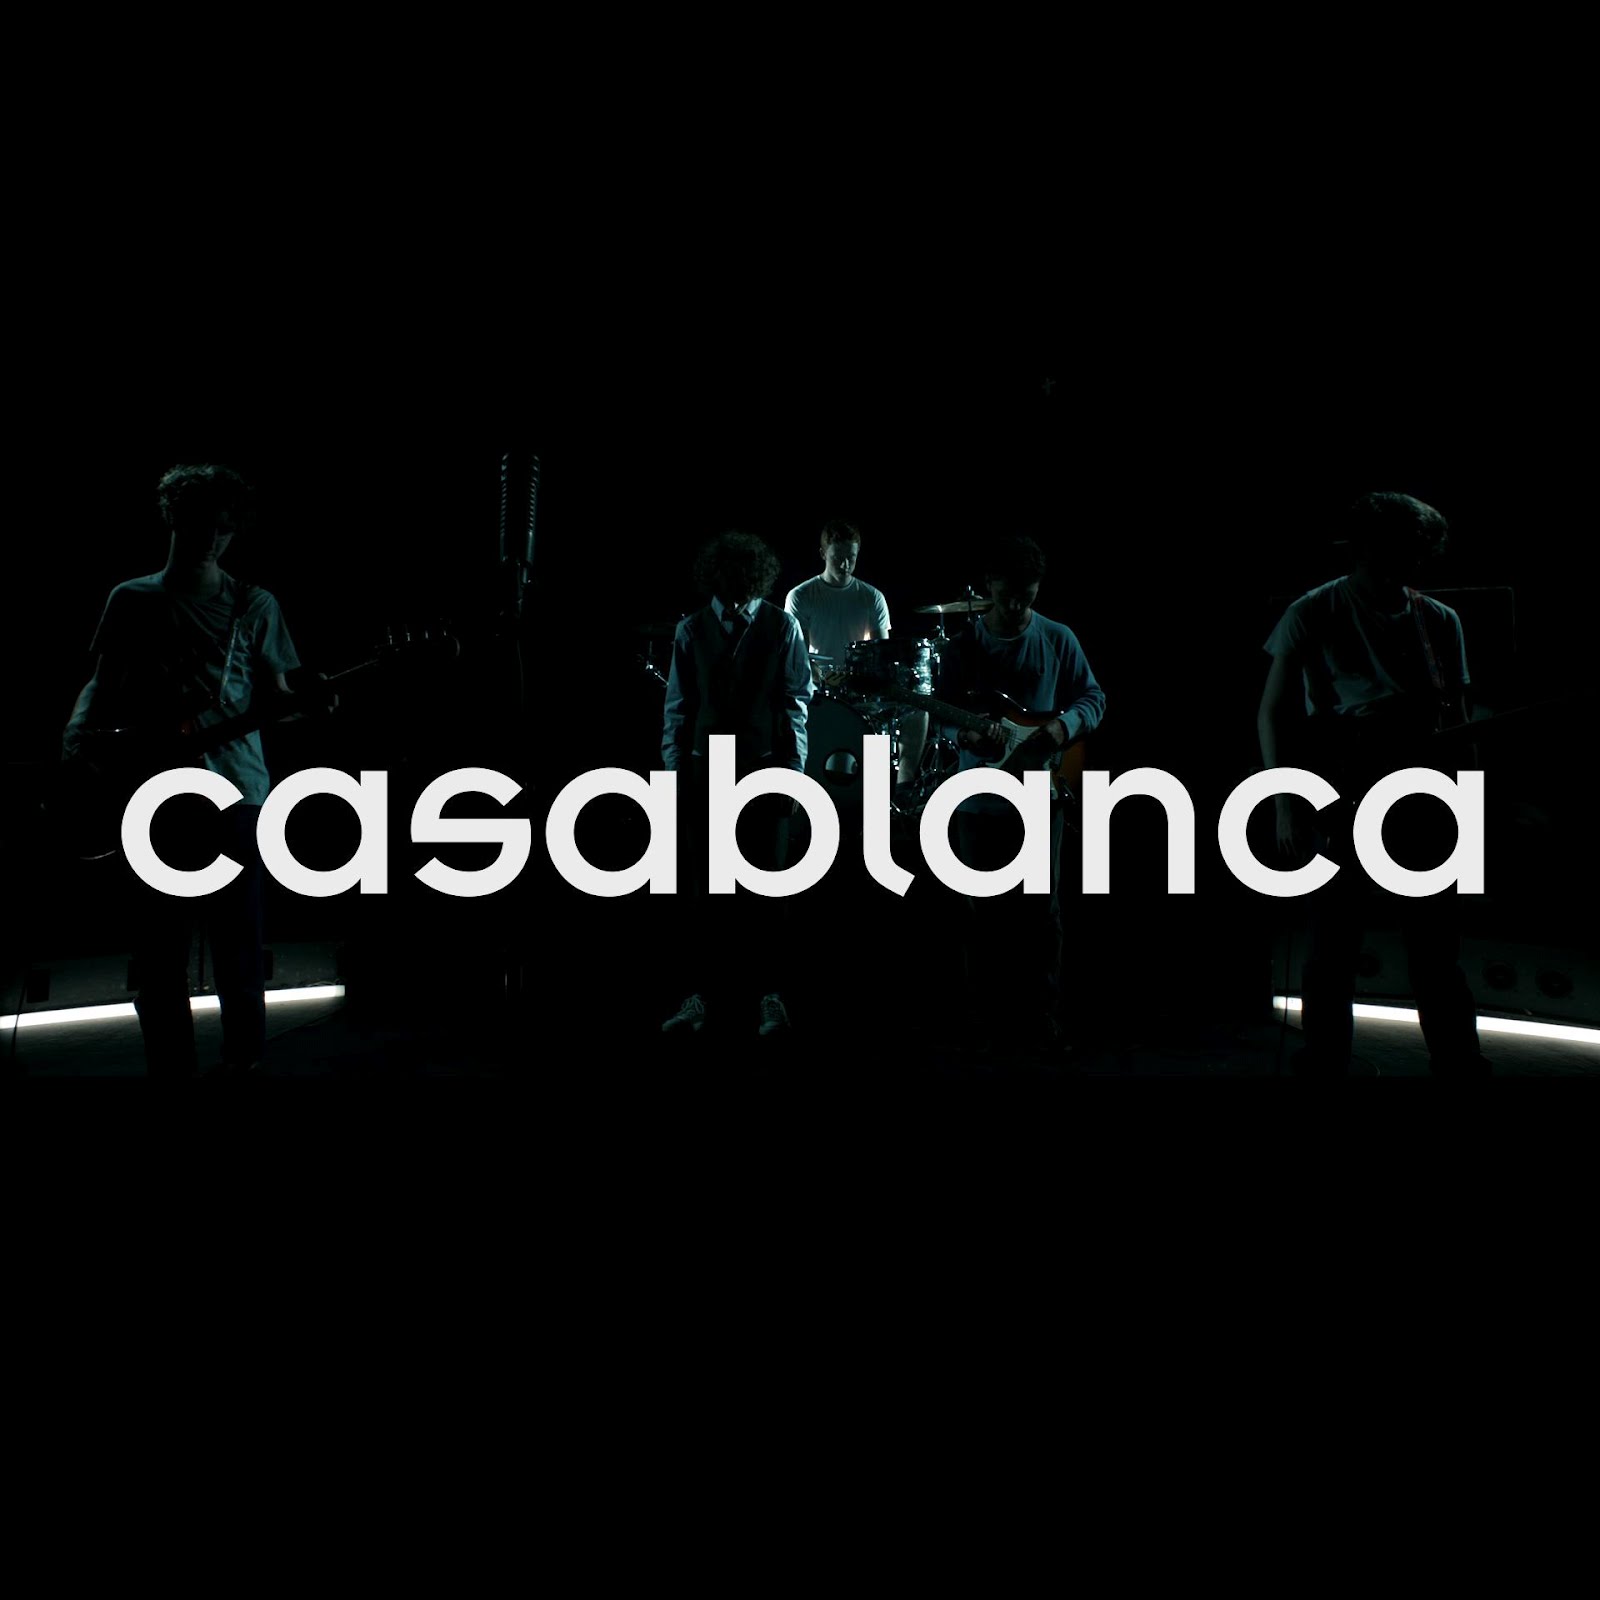 Песня касабланка mp3. Casablanca Music. Casablanca картинки с надписями. Новое видео Casablanca. Картинки красивые с надписью Касабланка.